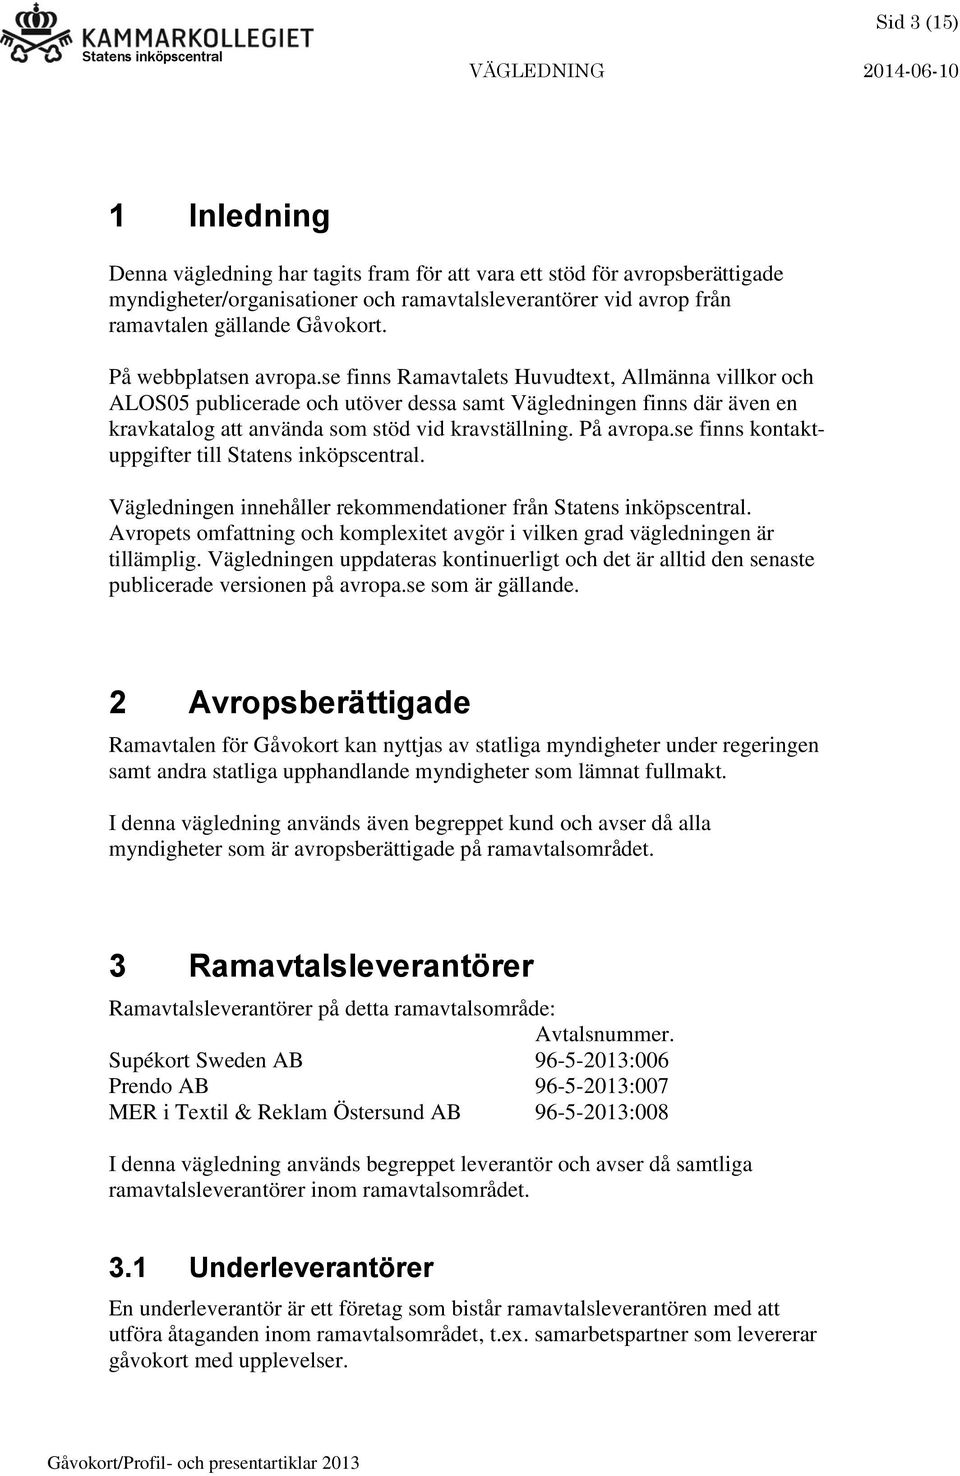 På avropa.se finns kontaktuppgifter till Statens inköpscentral. Vägledningen innehåller rekommendationer från Statens inköpscentral.